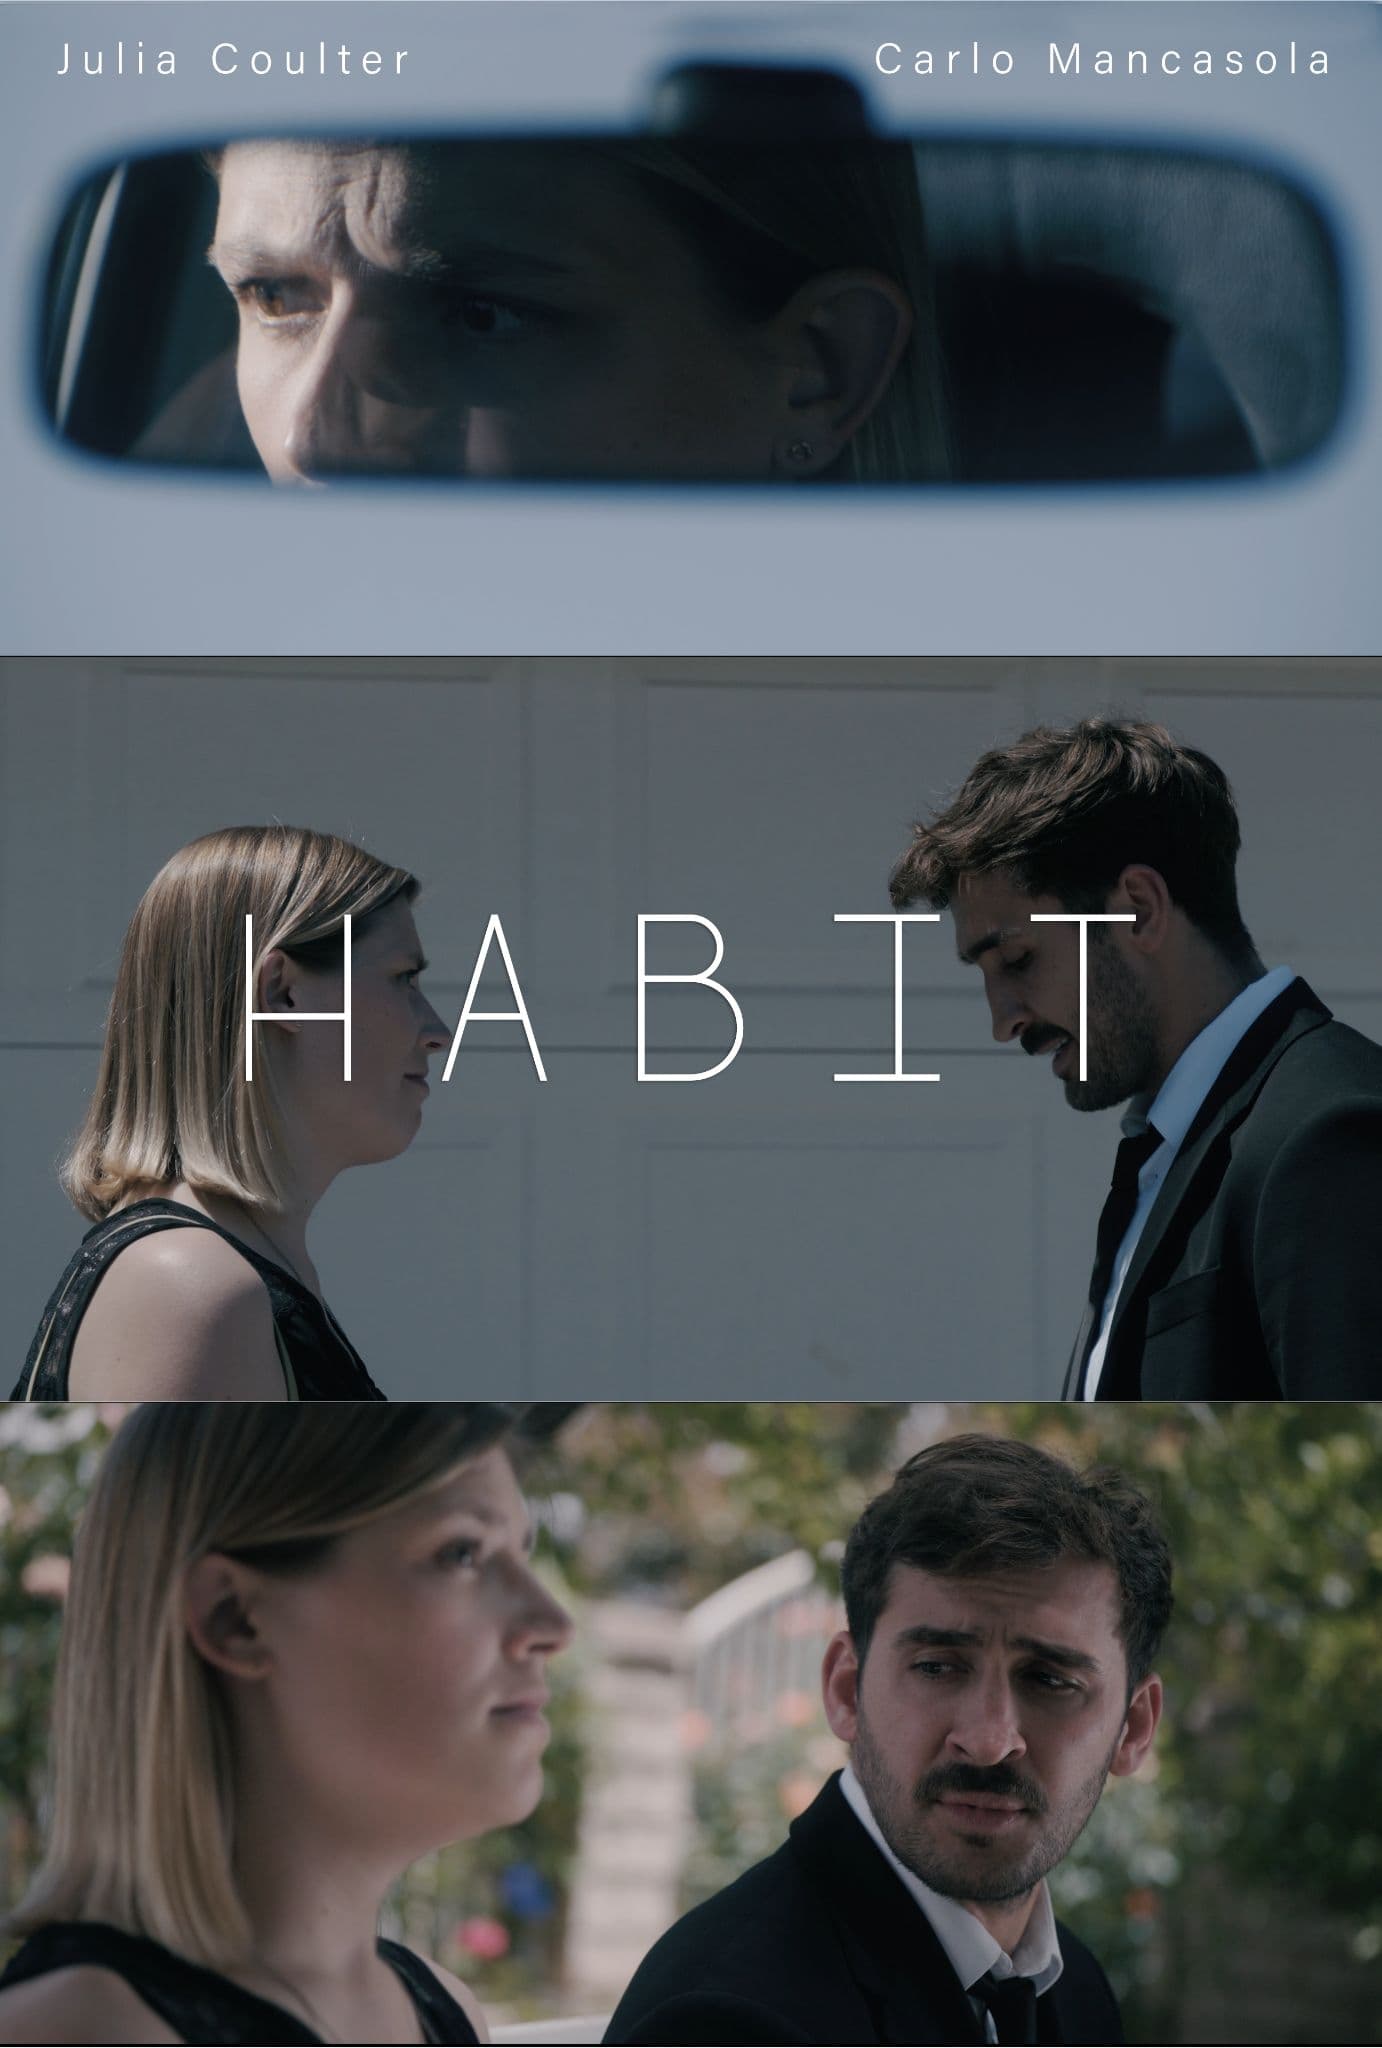 Habit